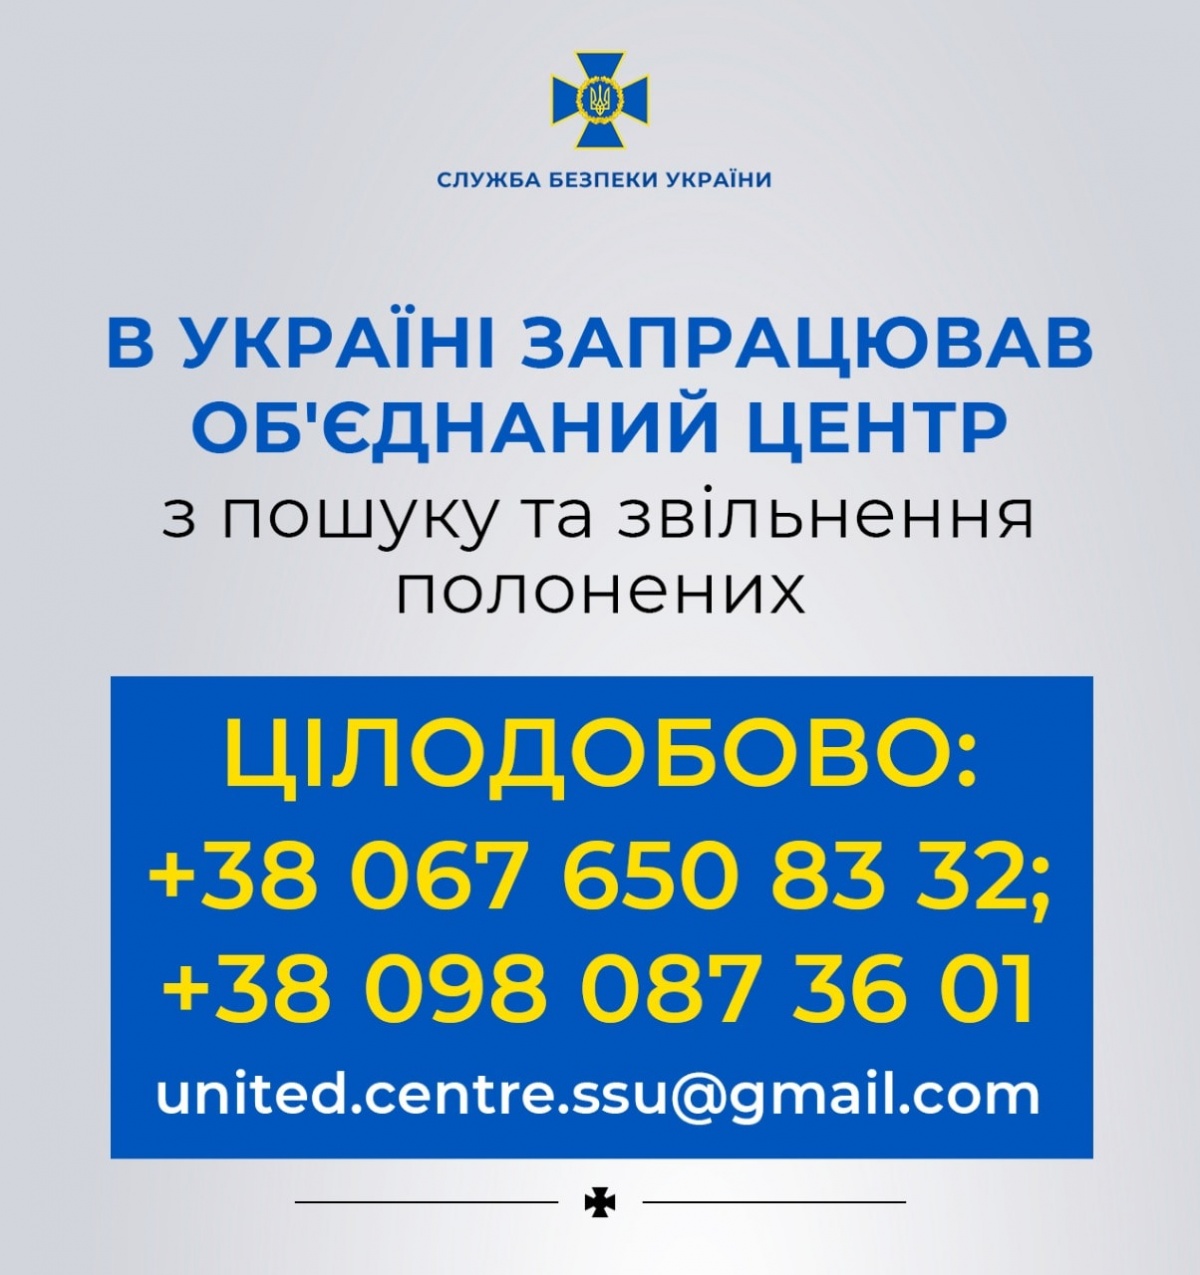 В Україні запрацював Об’єднаний центр з пошуку та звільнення полонених